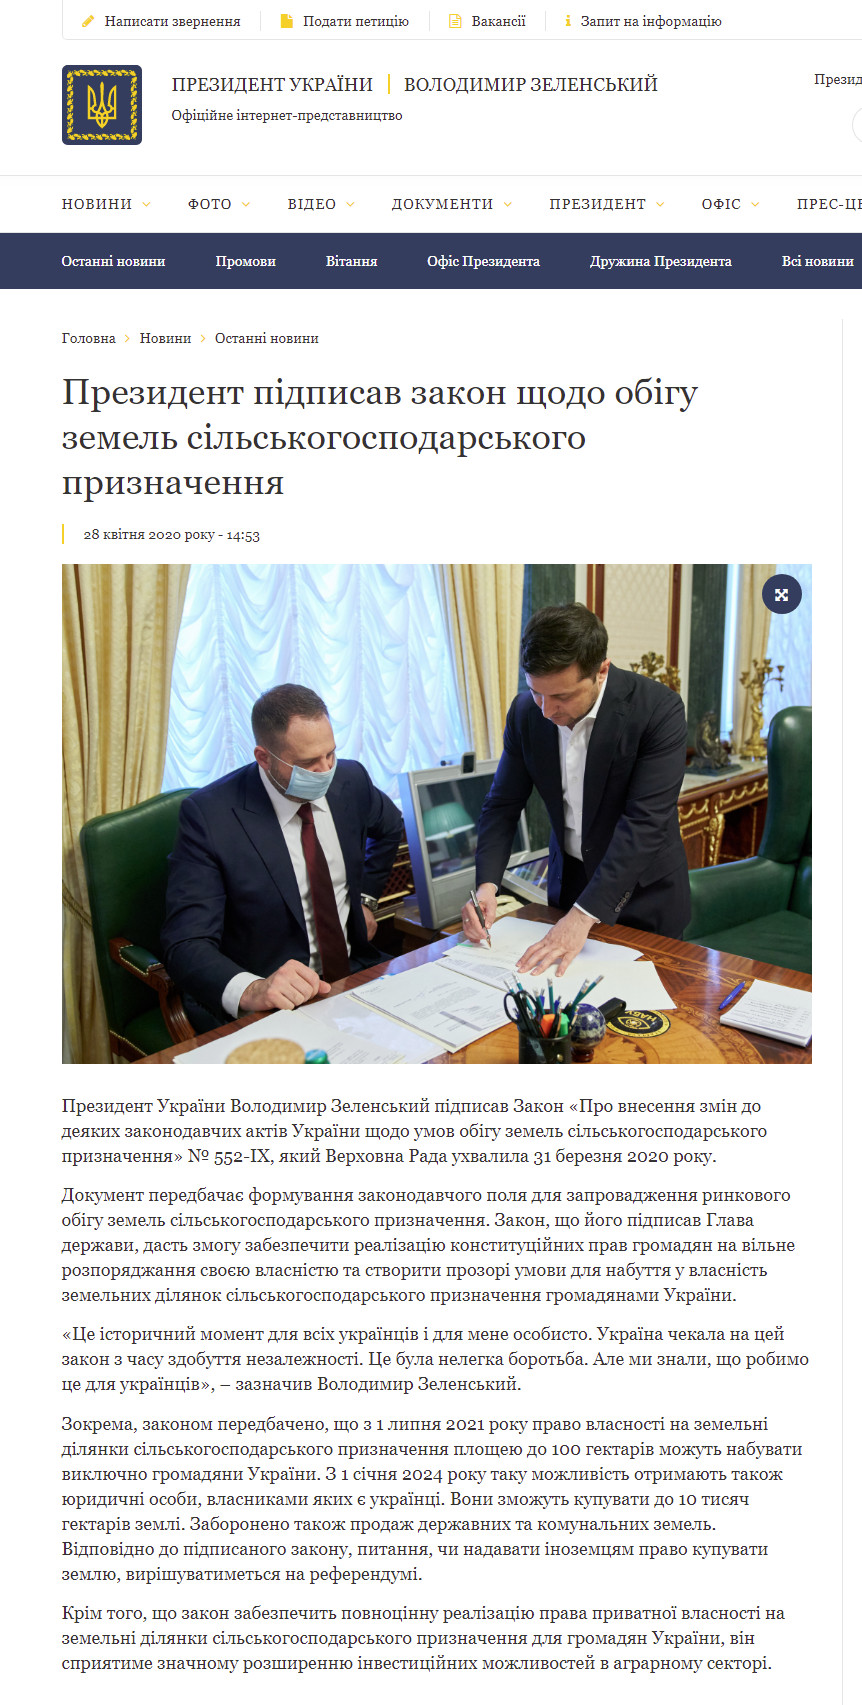 https://www.president.gov.ua/news/prezident-pidpisav-zakon-shodo-obigu-zemel-silskogospodarsko-60901